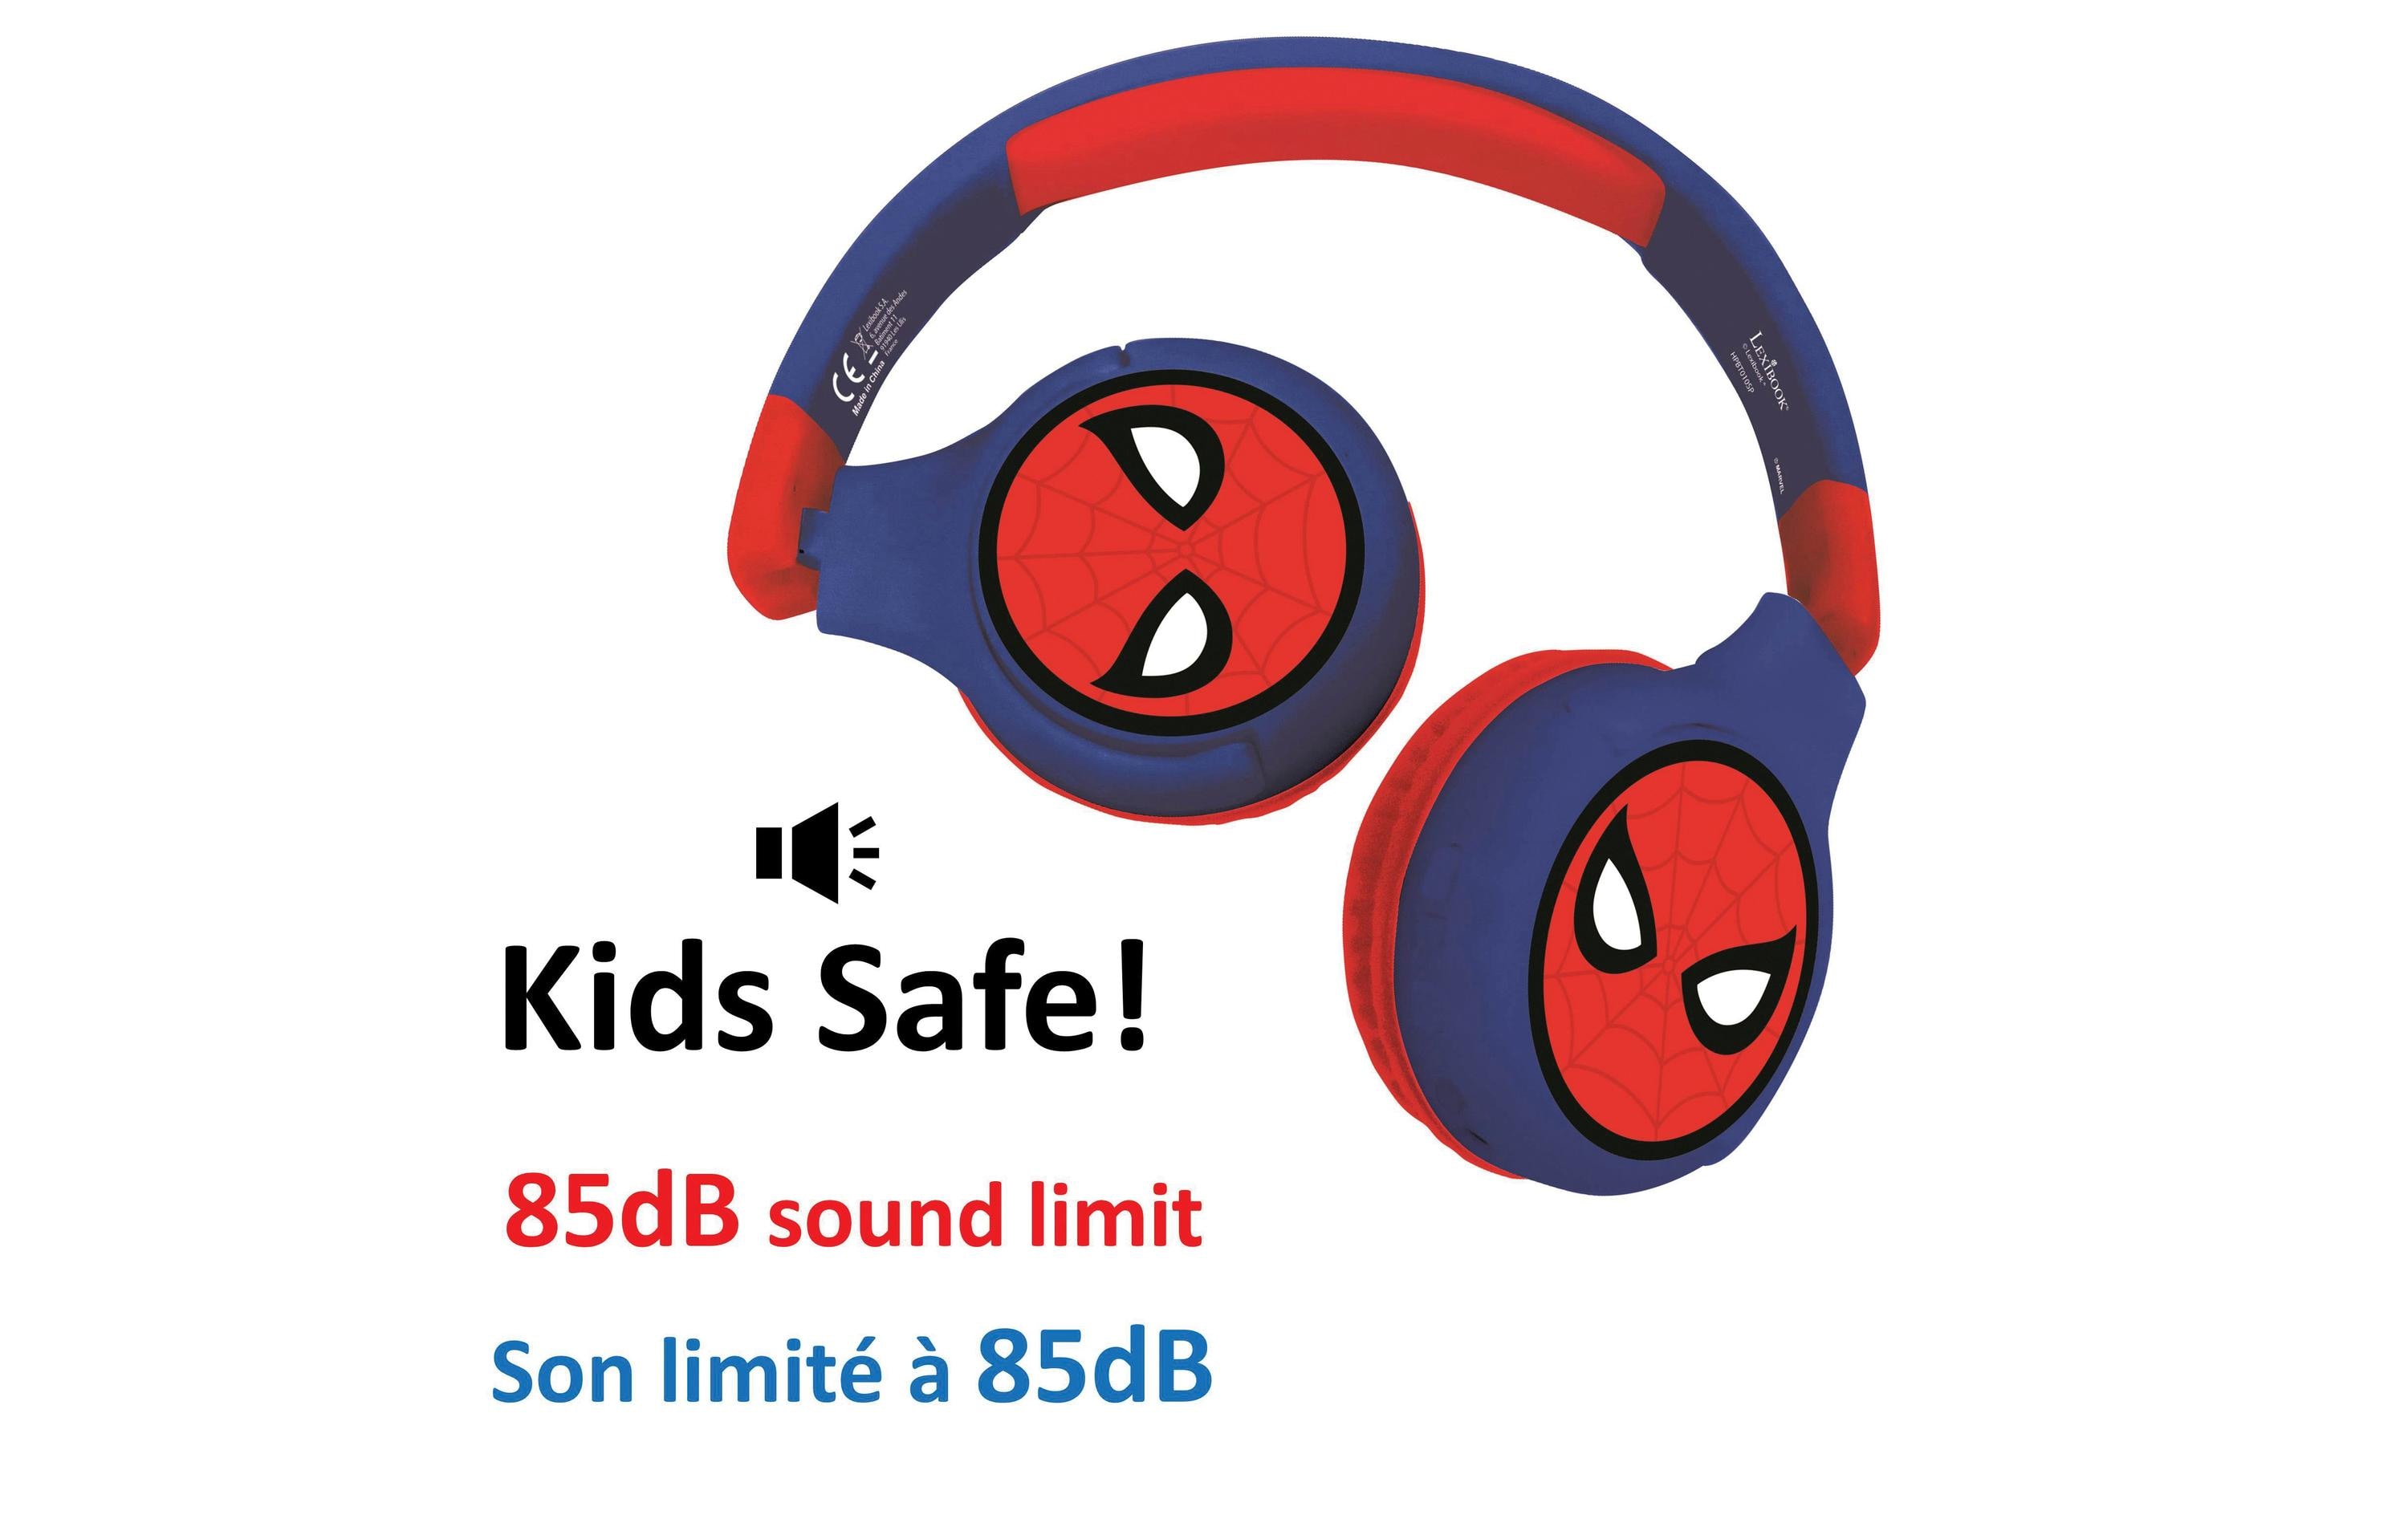 Lexibook Kinderkopfhörer Spider-Man 2-in-1-Bluetooth